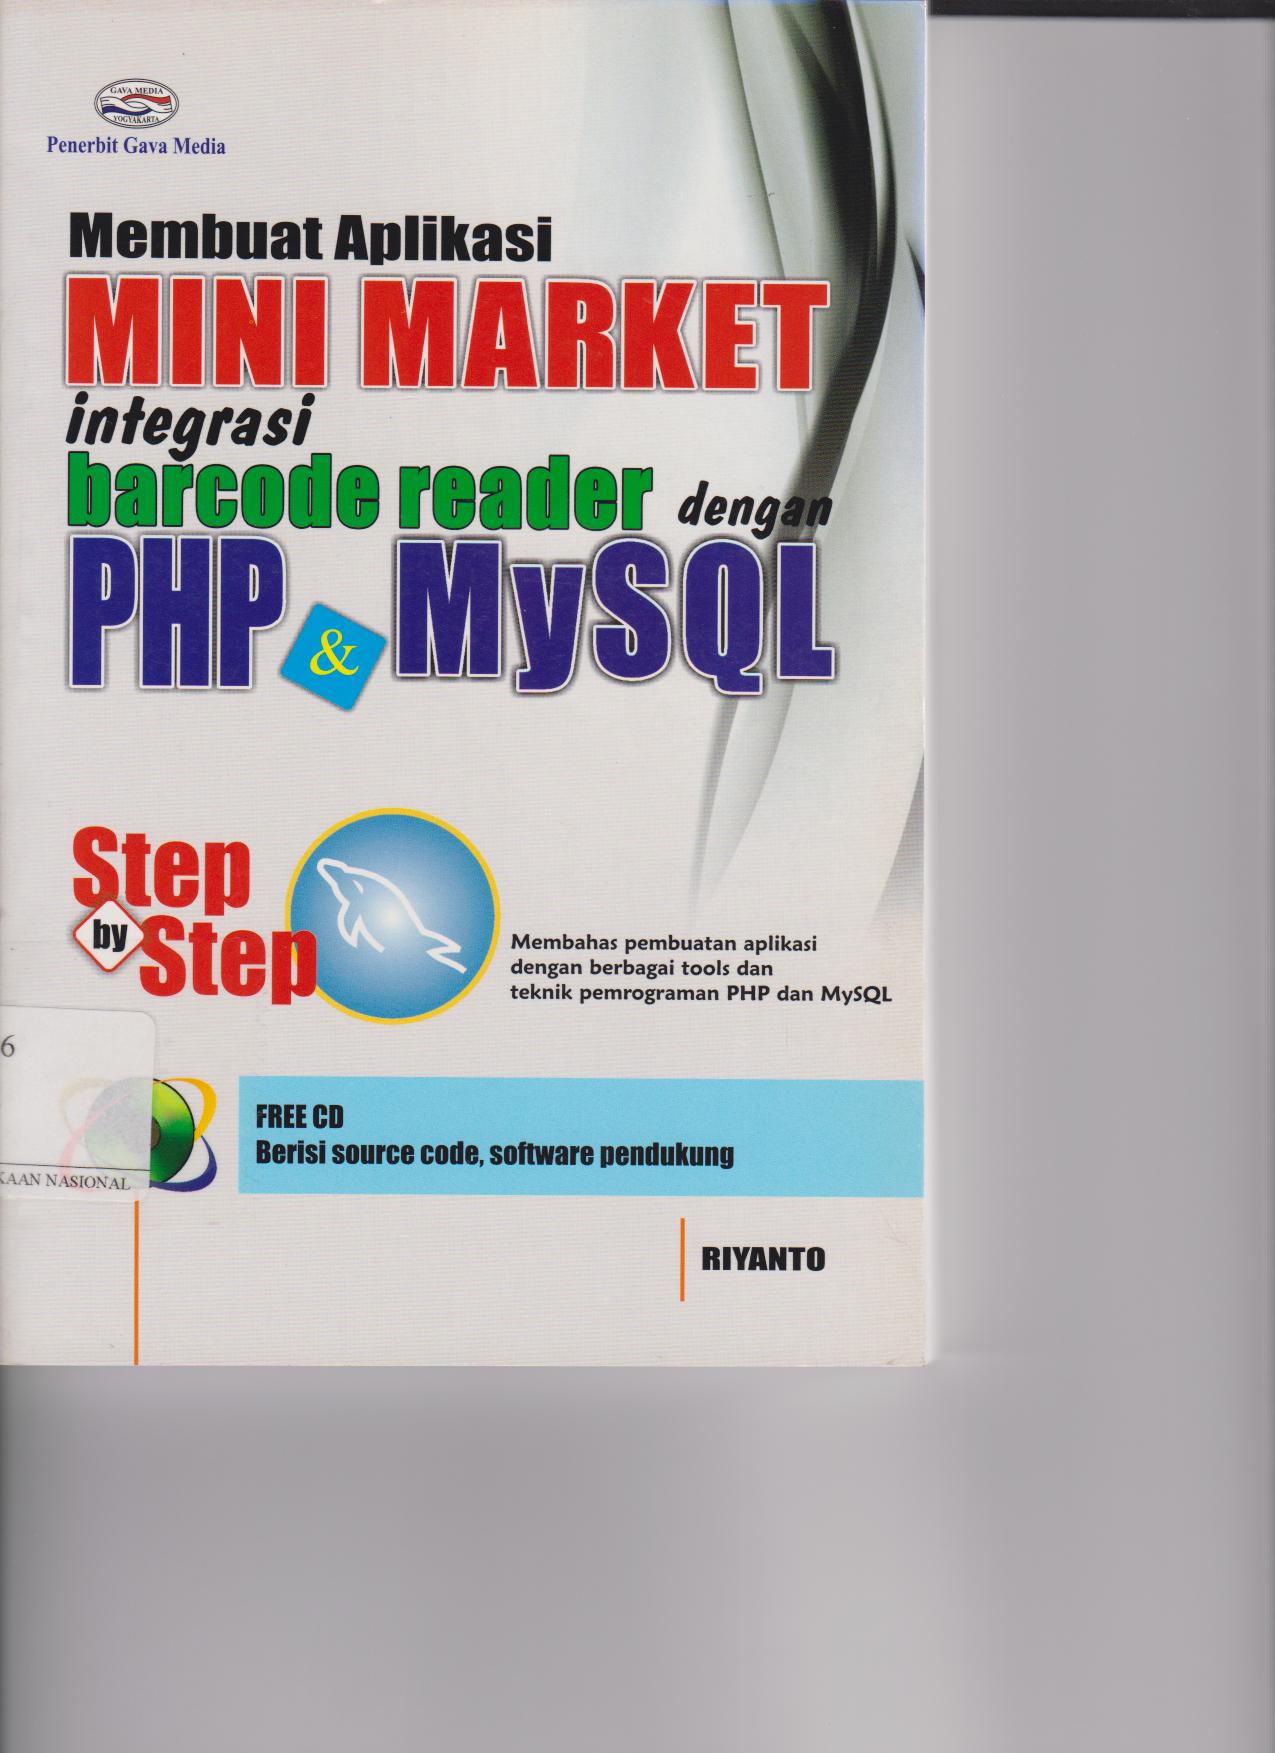 Membuat Aplikasi Mini Market Integrasi Barcode Reader Dengan PHP & MySQL  Step by Step : Membahas Pembuatan Aplikasi Dengan Berbagi Tools Dan Teknik Pemrograman PHP Dan MySQL